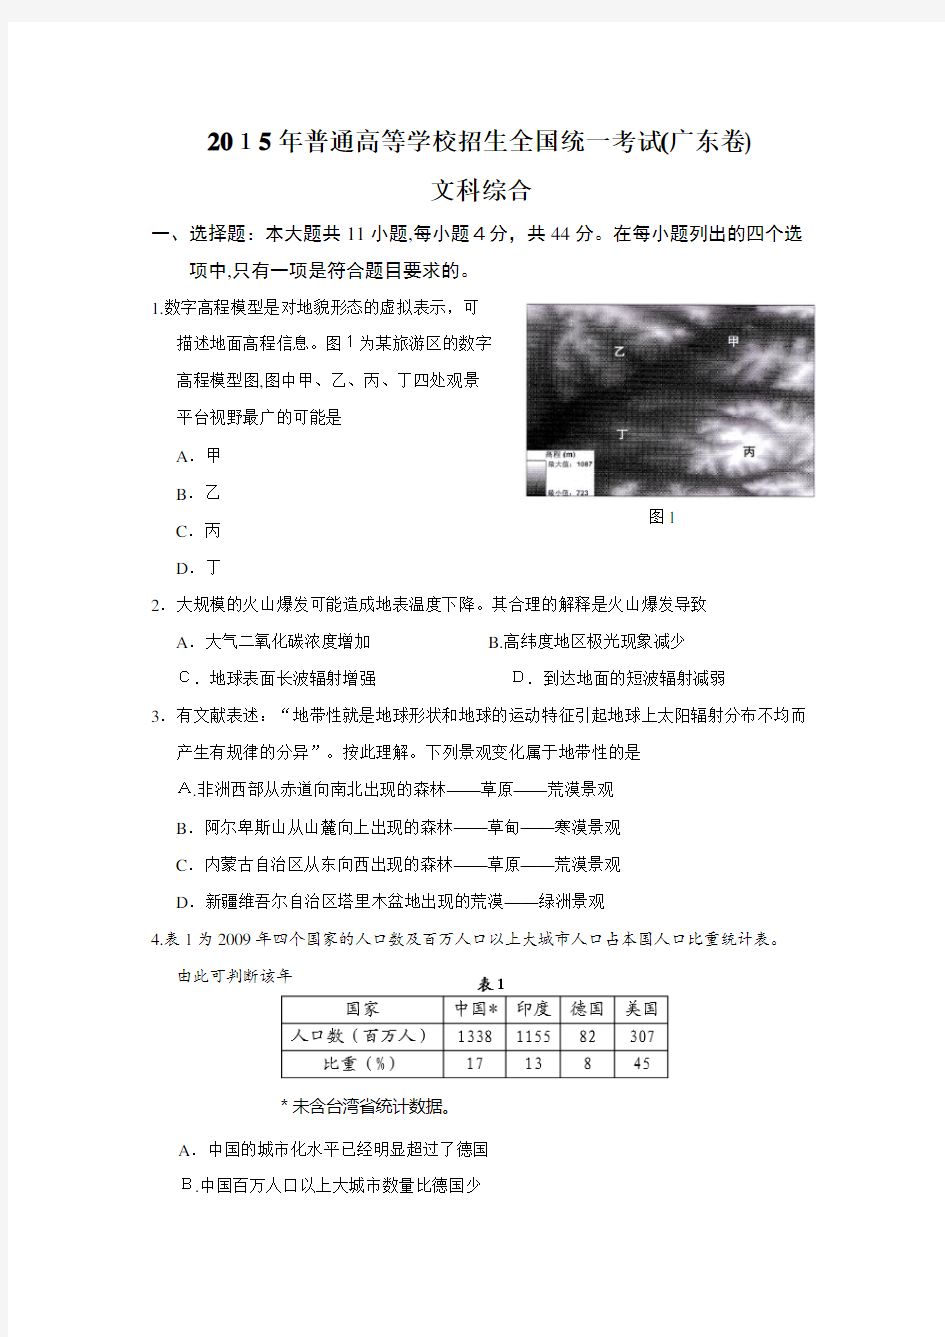 2015年高考广东卷文科综合地理试题及标准答案(高清)